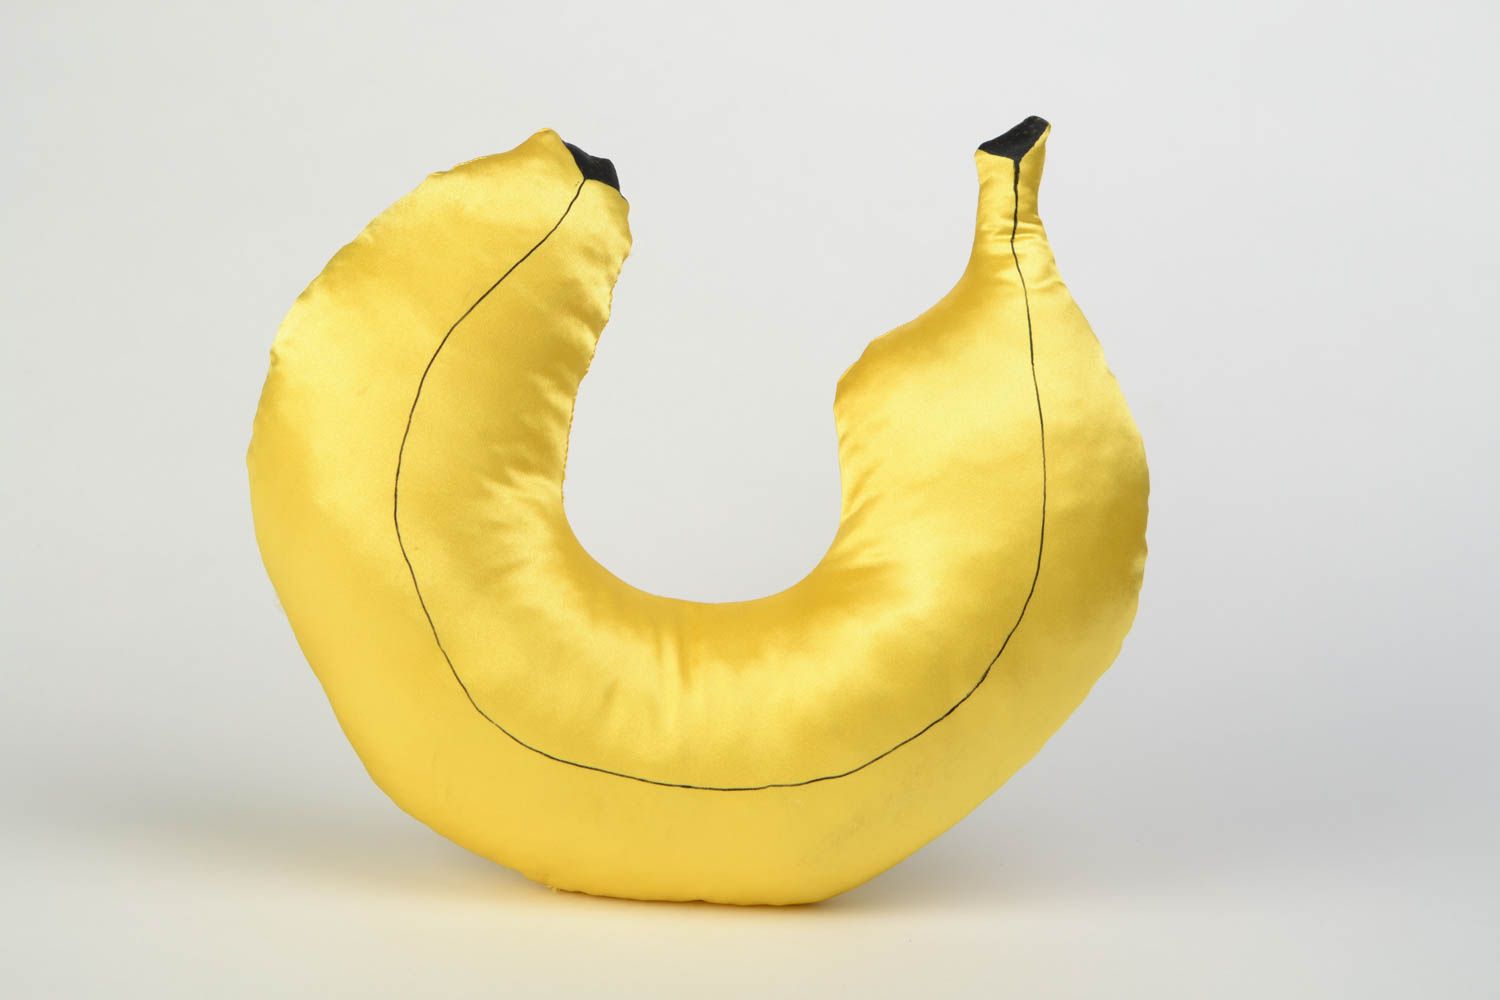 Nacken Kissen in Form von Banane aus Atlas Reisekissen in Gelb Handarbeit foto 4